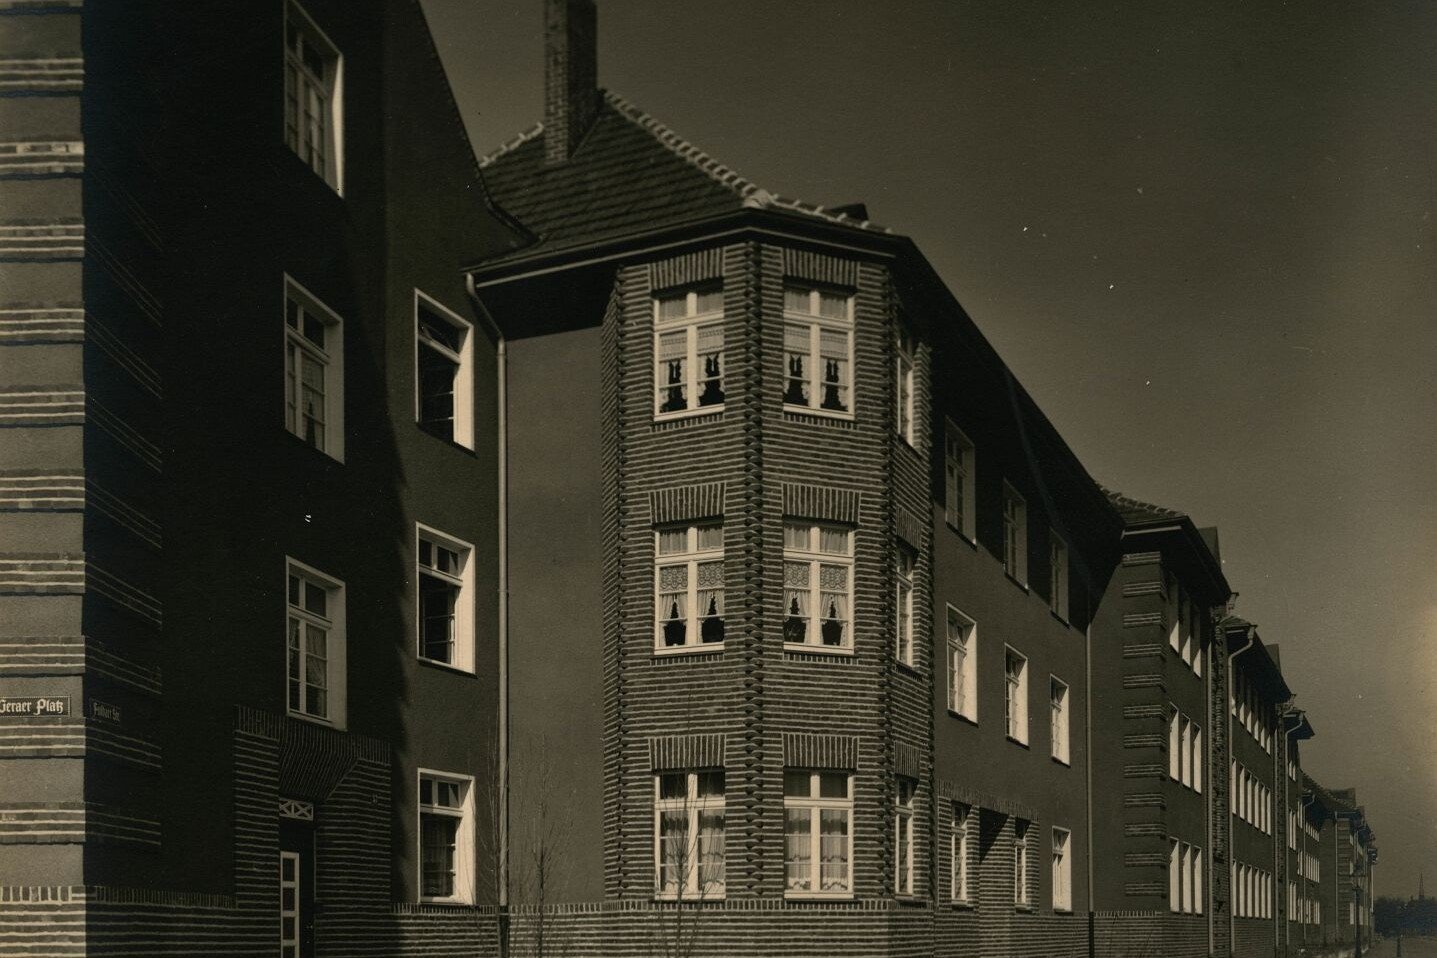 Historisches Foto von Erkern in der Germaniasiedlung in Höhenberg am Geraer Platz